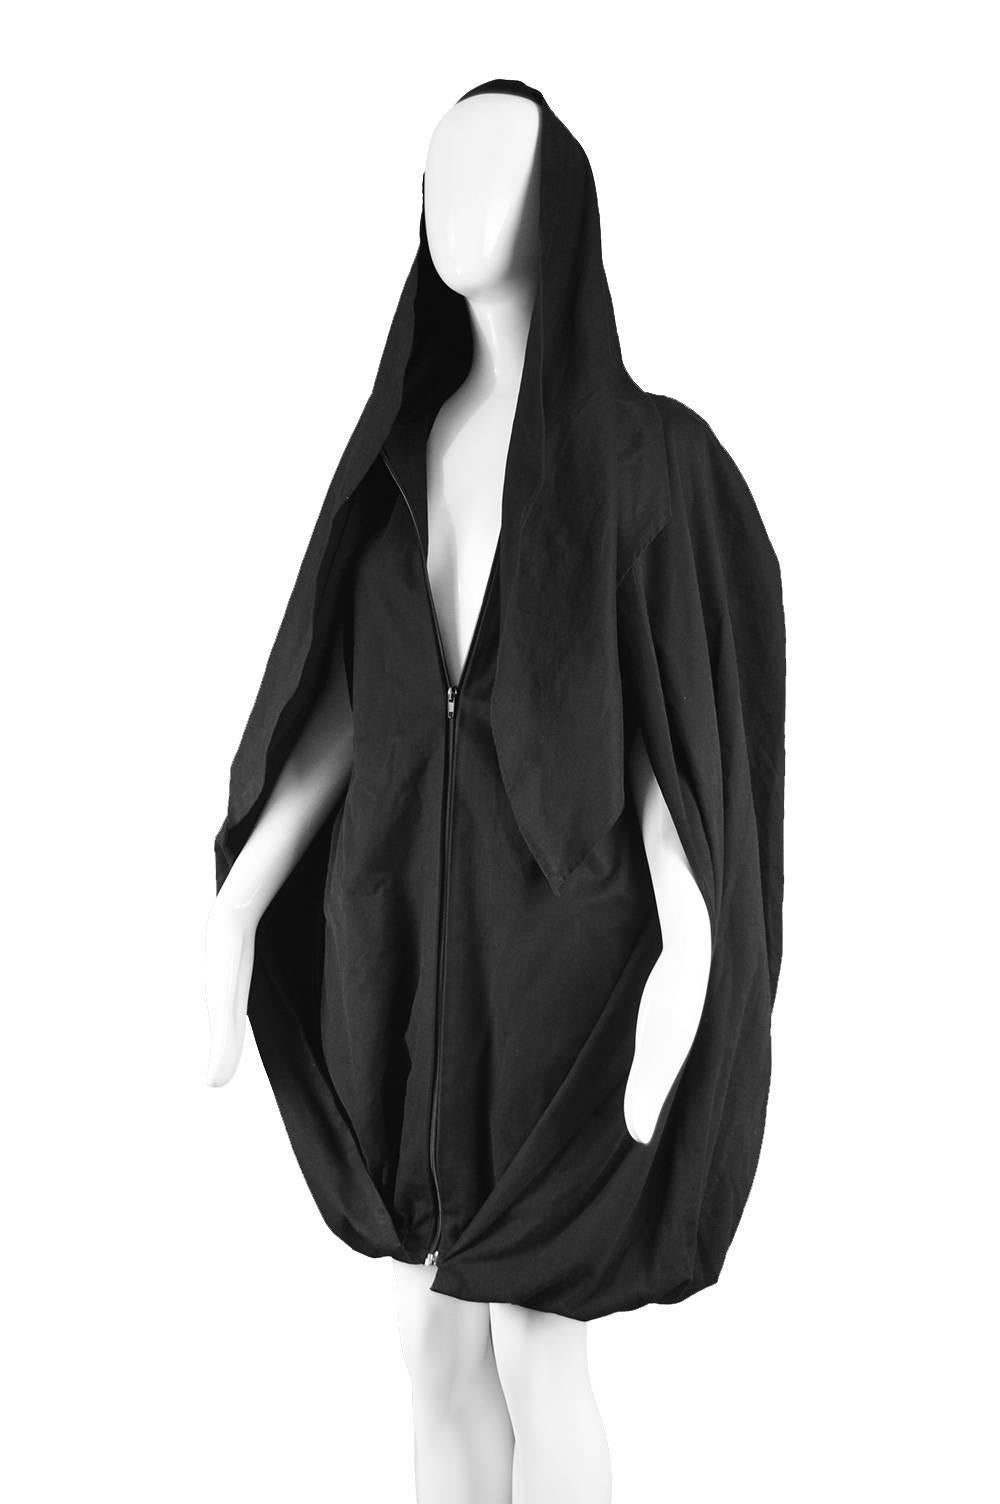 Sybilla Vintage 1980s Avant Garde Architectural Black Cape Coat Dress  1